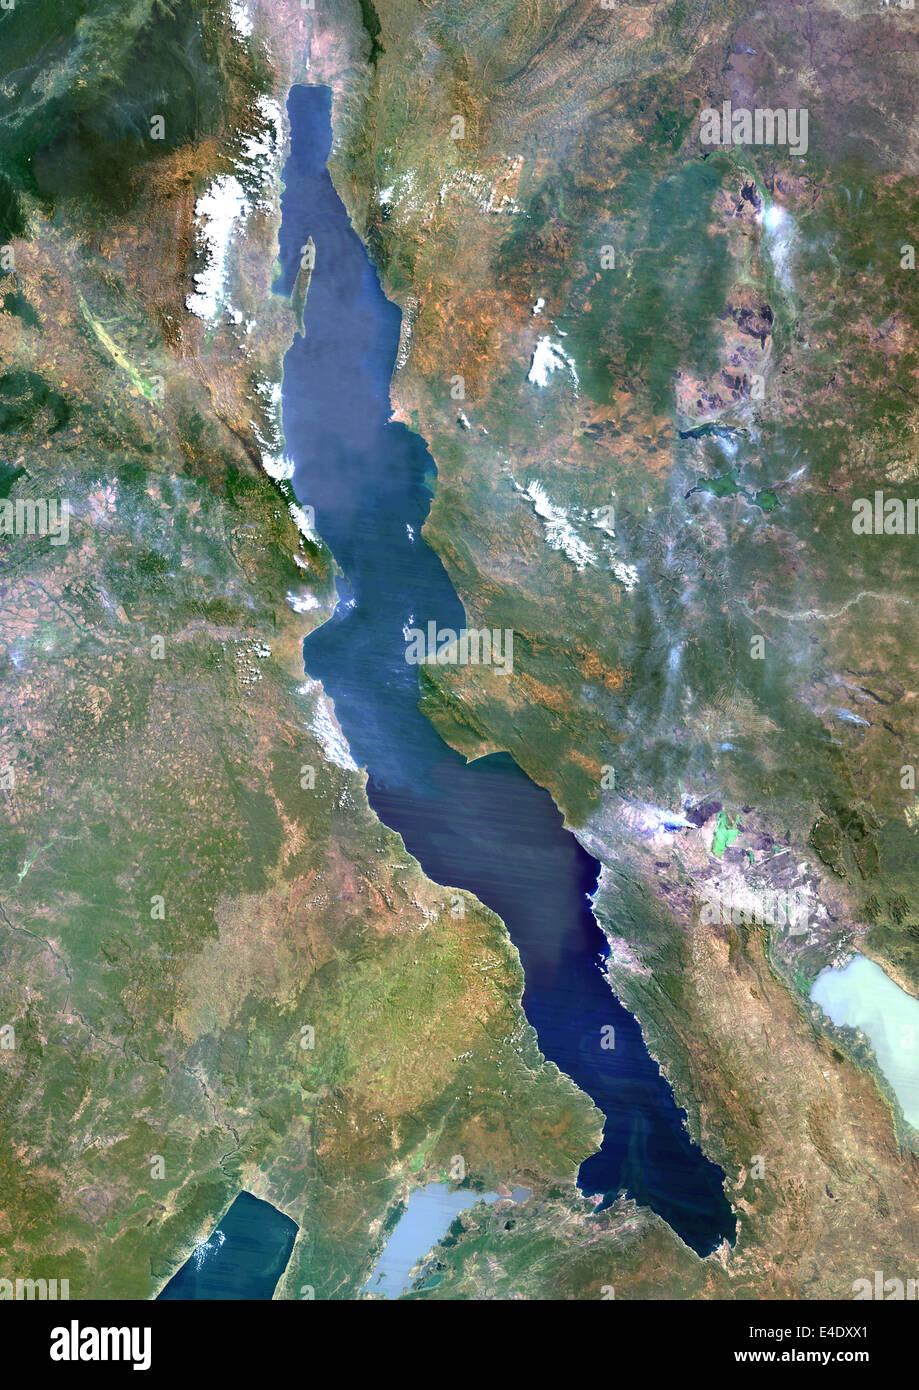 Длинное озеро африки. Озеро Танганьика. Африканское озеро Танганьика. Озеро Танганьика из космоса. Озеро Танганьика космический снимок.